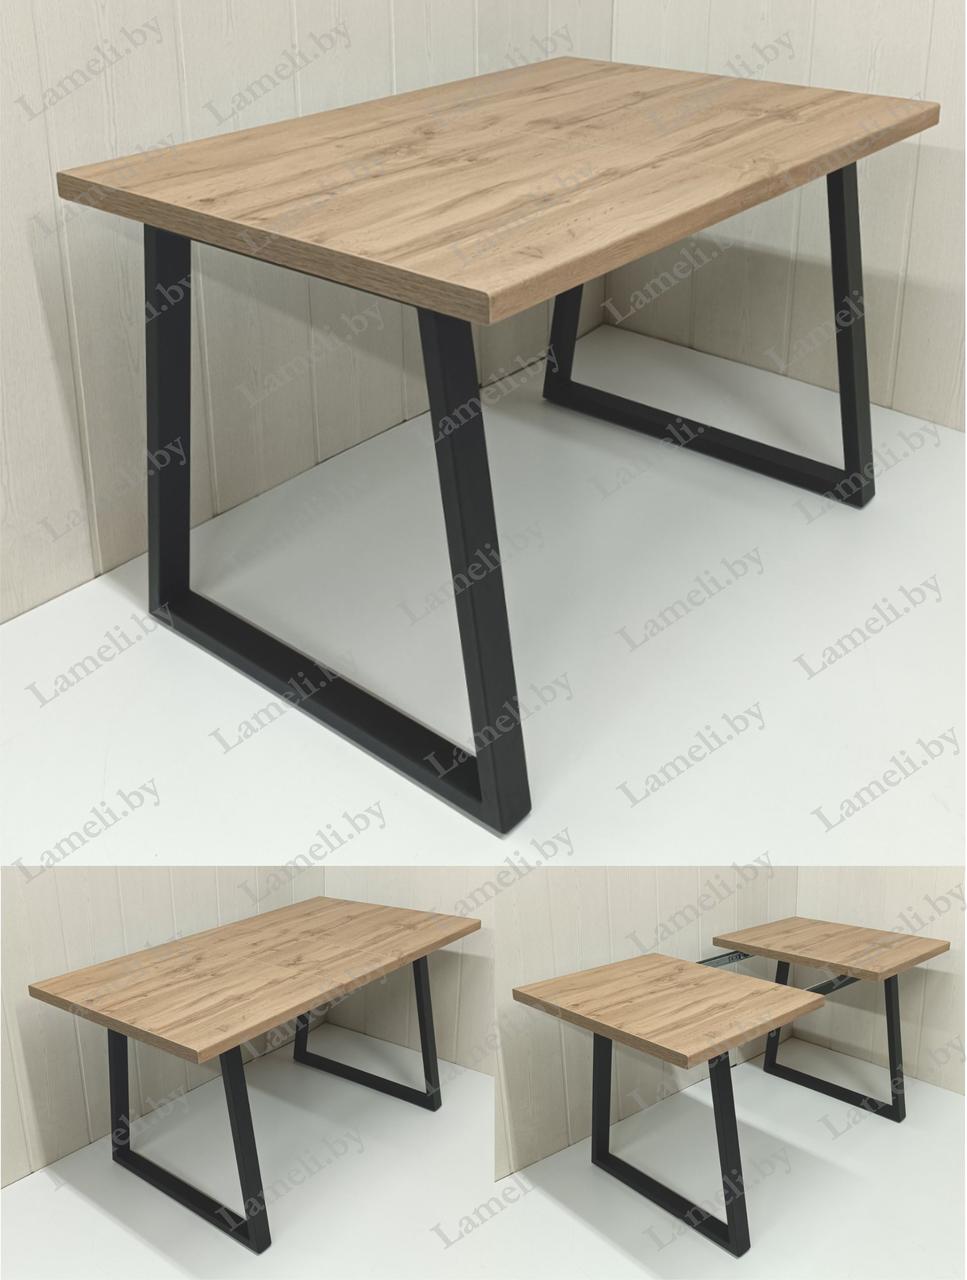 Раздвижной стол из постформинга, ЛДСП или массива дуба на металлокаркасе серии "БУА" с выбором цвета и размера